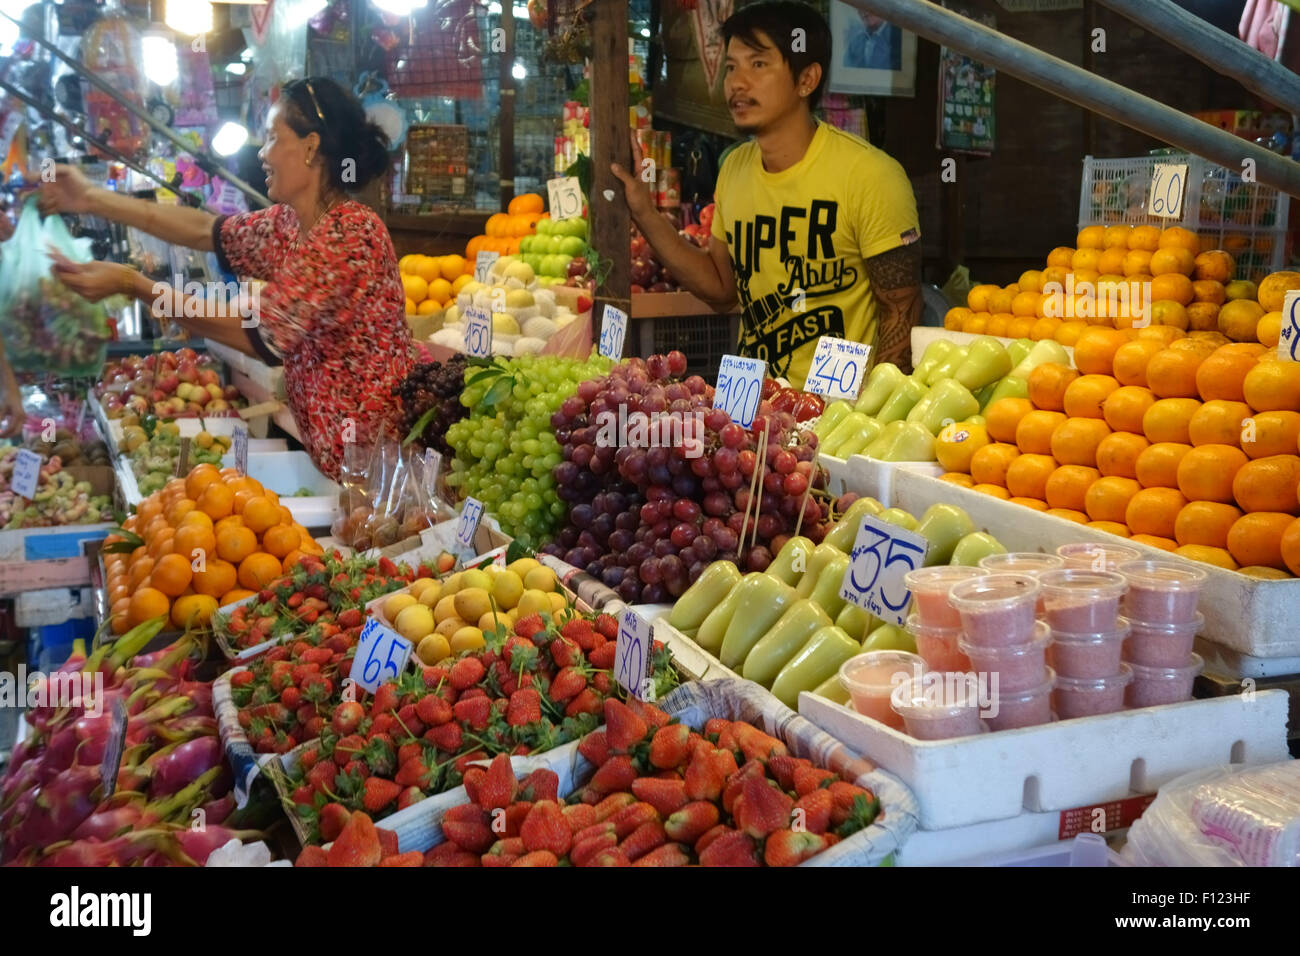 Obst stall in einen Lebensmittelmarkt in Bangkok mit Preise in Thai Baht und eine Frau, Dienst am Kunden, Thailand Stockfoto